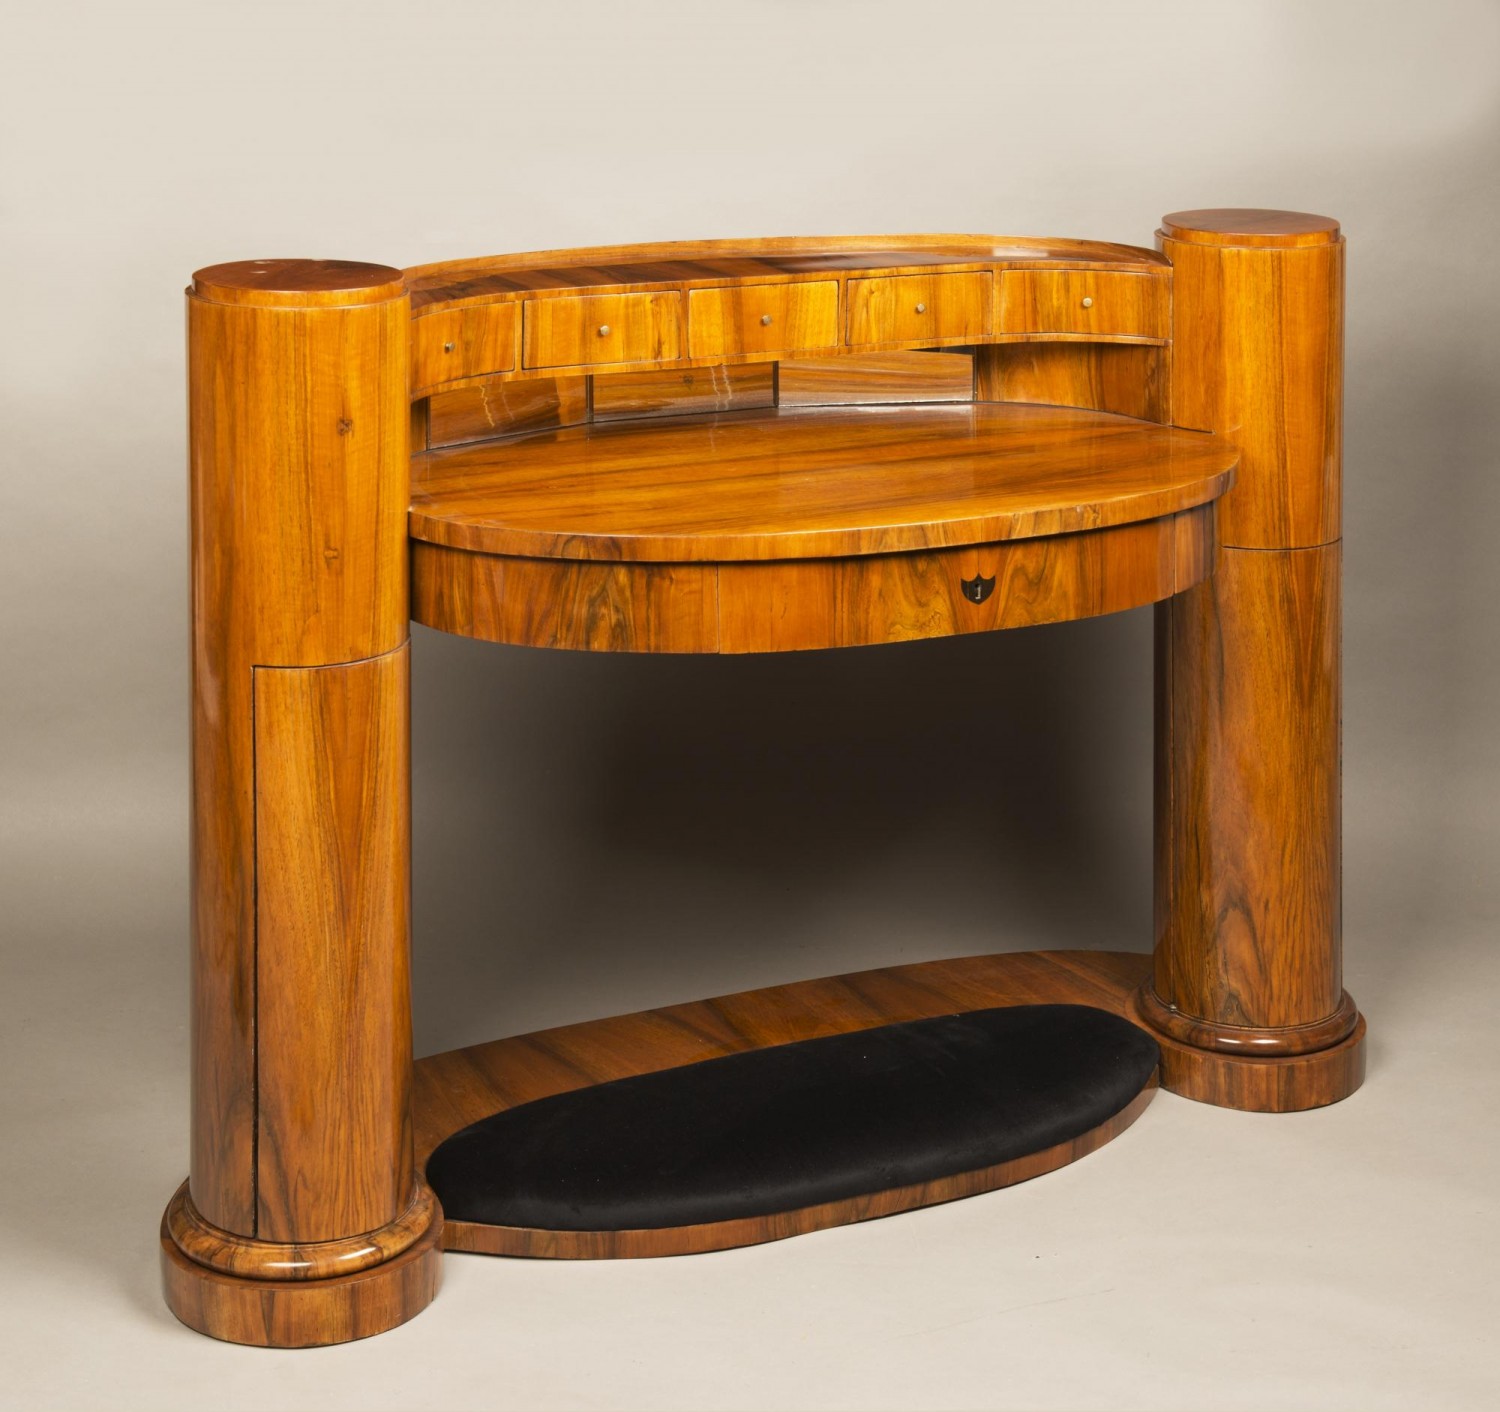 Joseph Ulrich Danhauser: dámský stůl, 1830  ořech, dub, 99 x 139 x 61 cm  dosažená cena: 595 200 Kč Arthouse Hejtmánek 31.5.2018